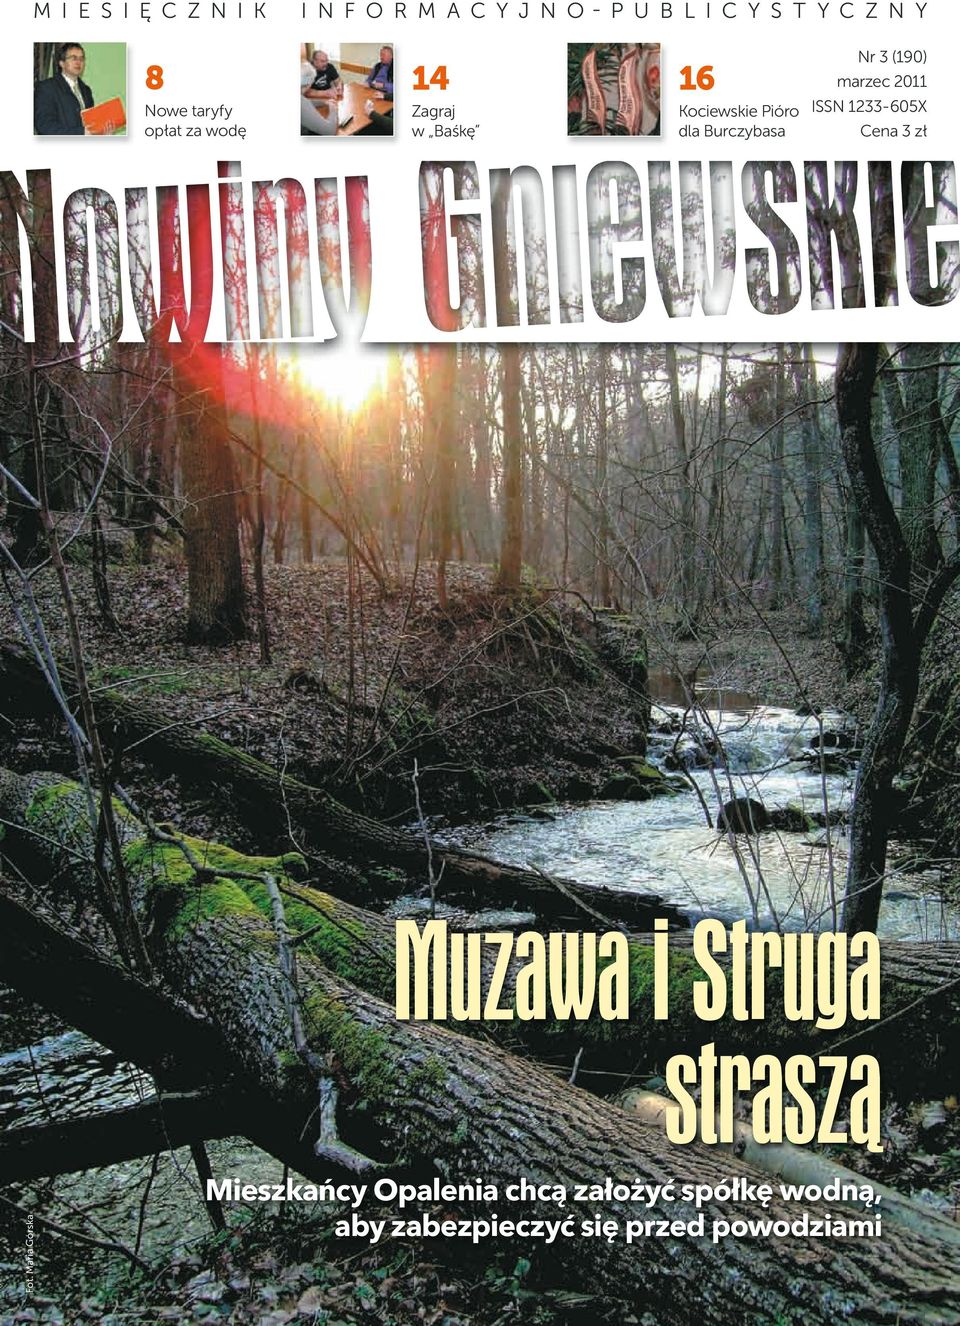 ISSN 1233-605X Cena 3 zł Muzawa i Struga straszą Fot.